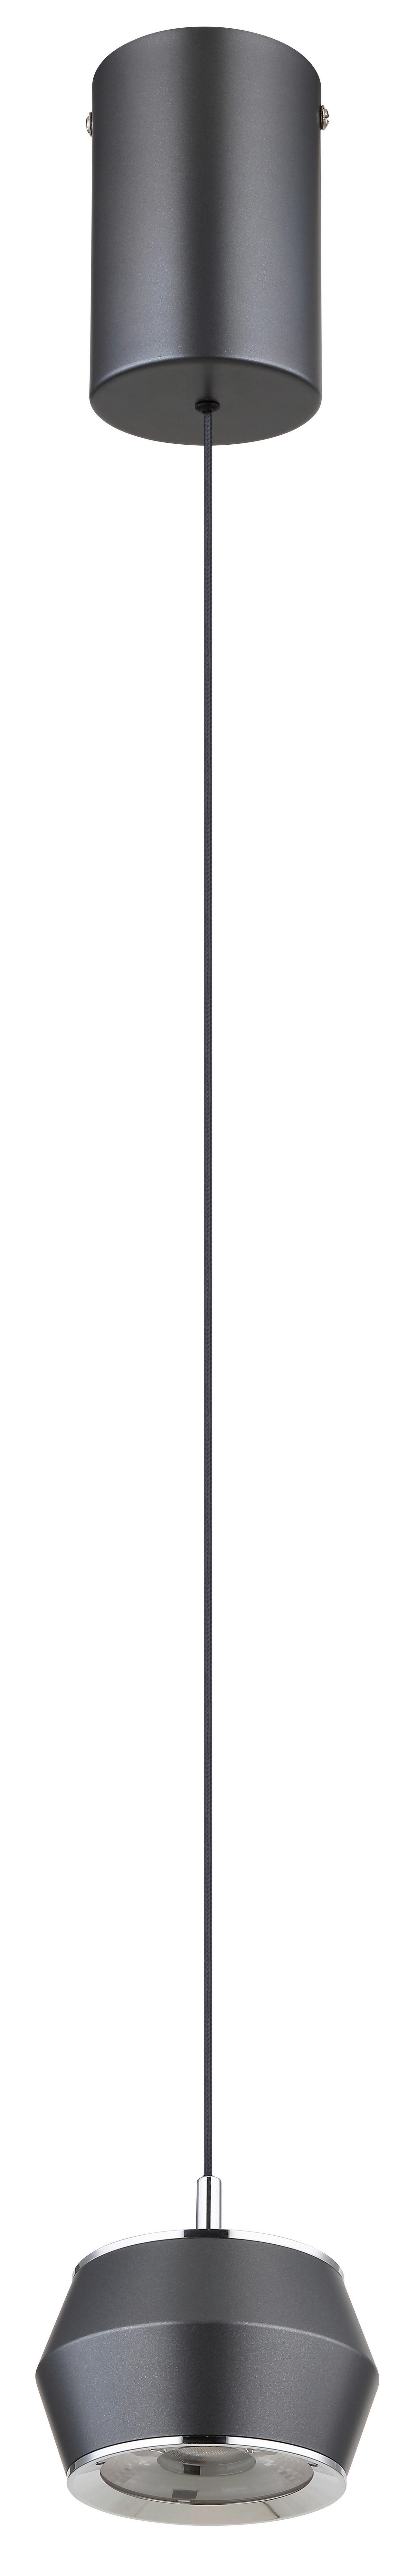 LED-HÄNGELEUCHTE 10/200 cm   - Opal/Grau, Design, Kunststoff/Metall (10/200cm) - Globo